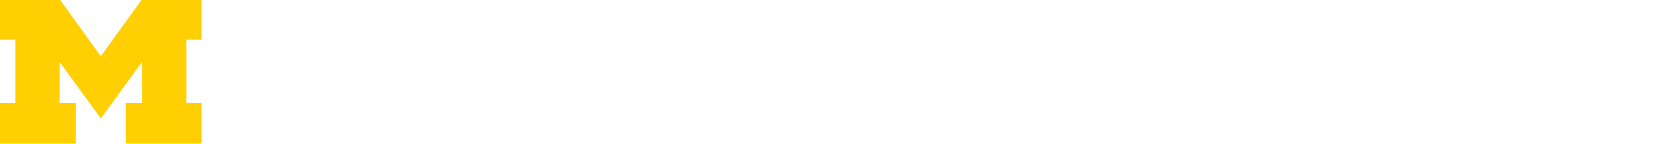 Plasma, Pulsed Power, & Microwave Lab logo